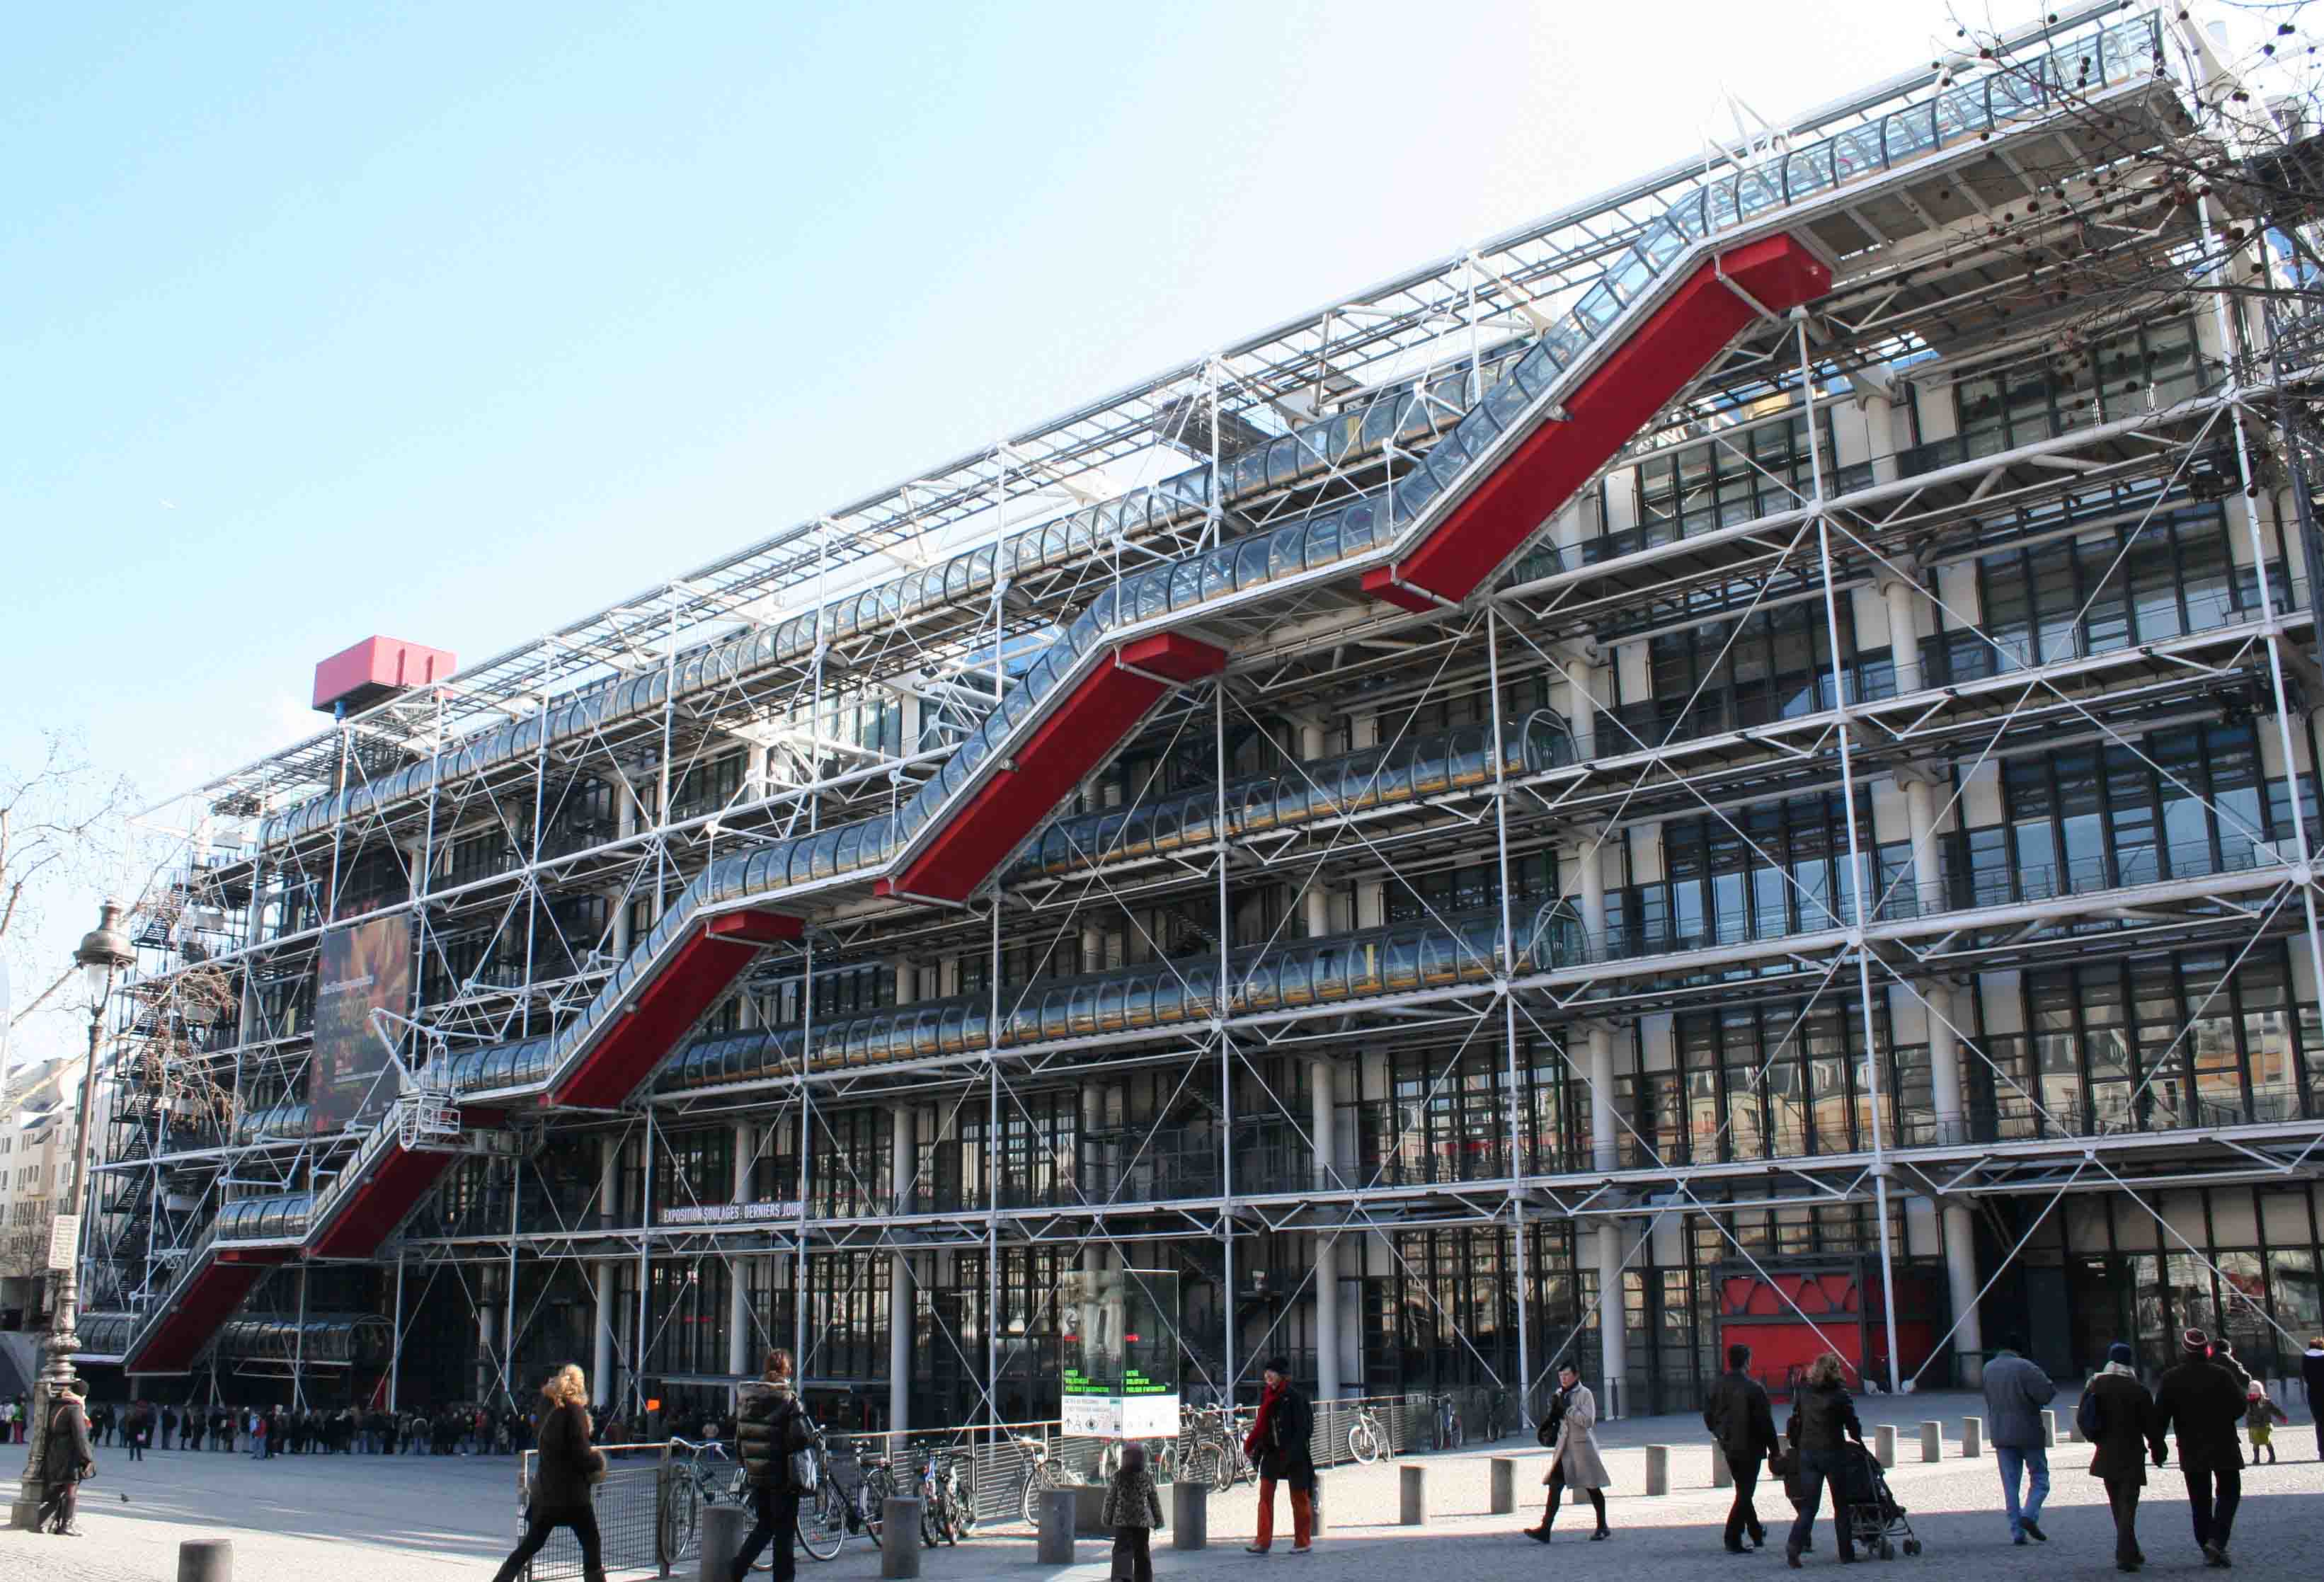 El famoso museo parisino inaugurará esta nueva sede cerca de 2020 en el marco de nuevos espacios arte que creará fuera de Francia